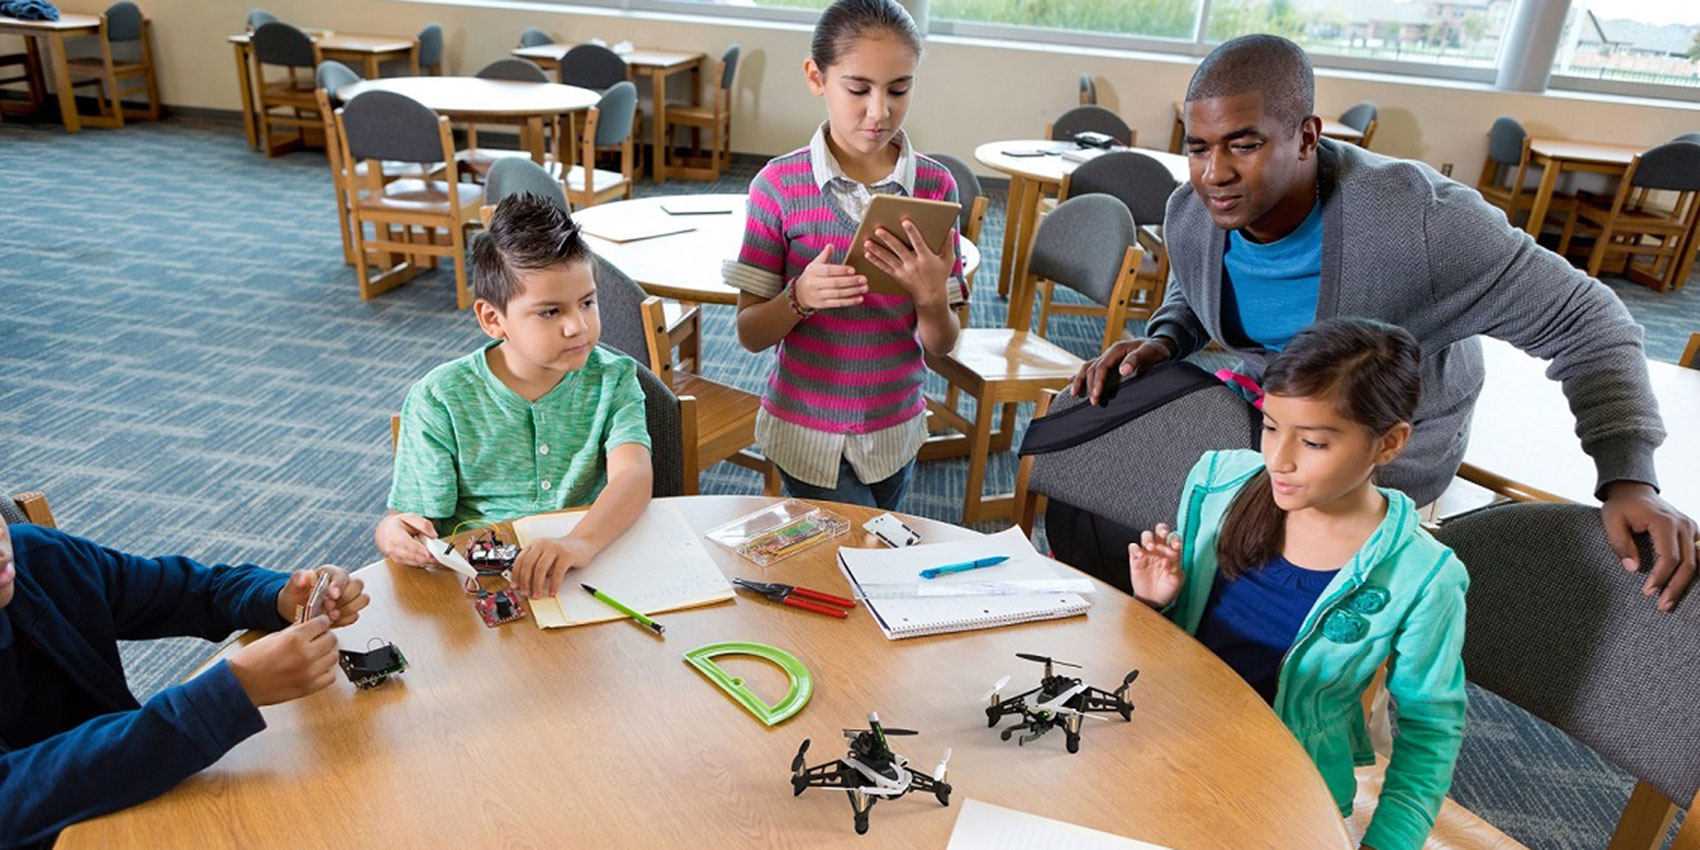 Desde escuelas primarias hasta doctorados, los drones ofrecen una nueva y extraordinaria visin con incontables aplicaciones...